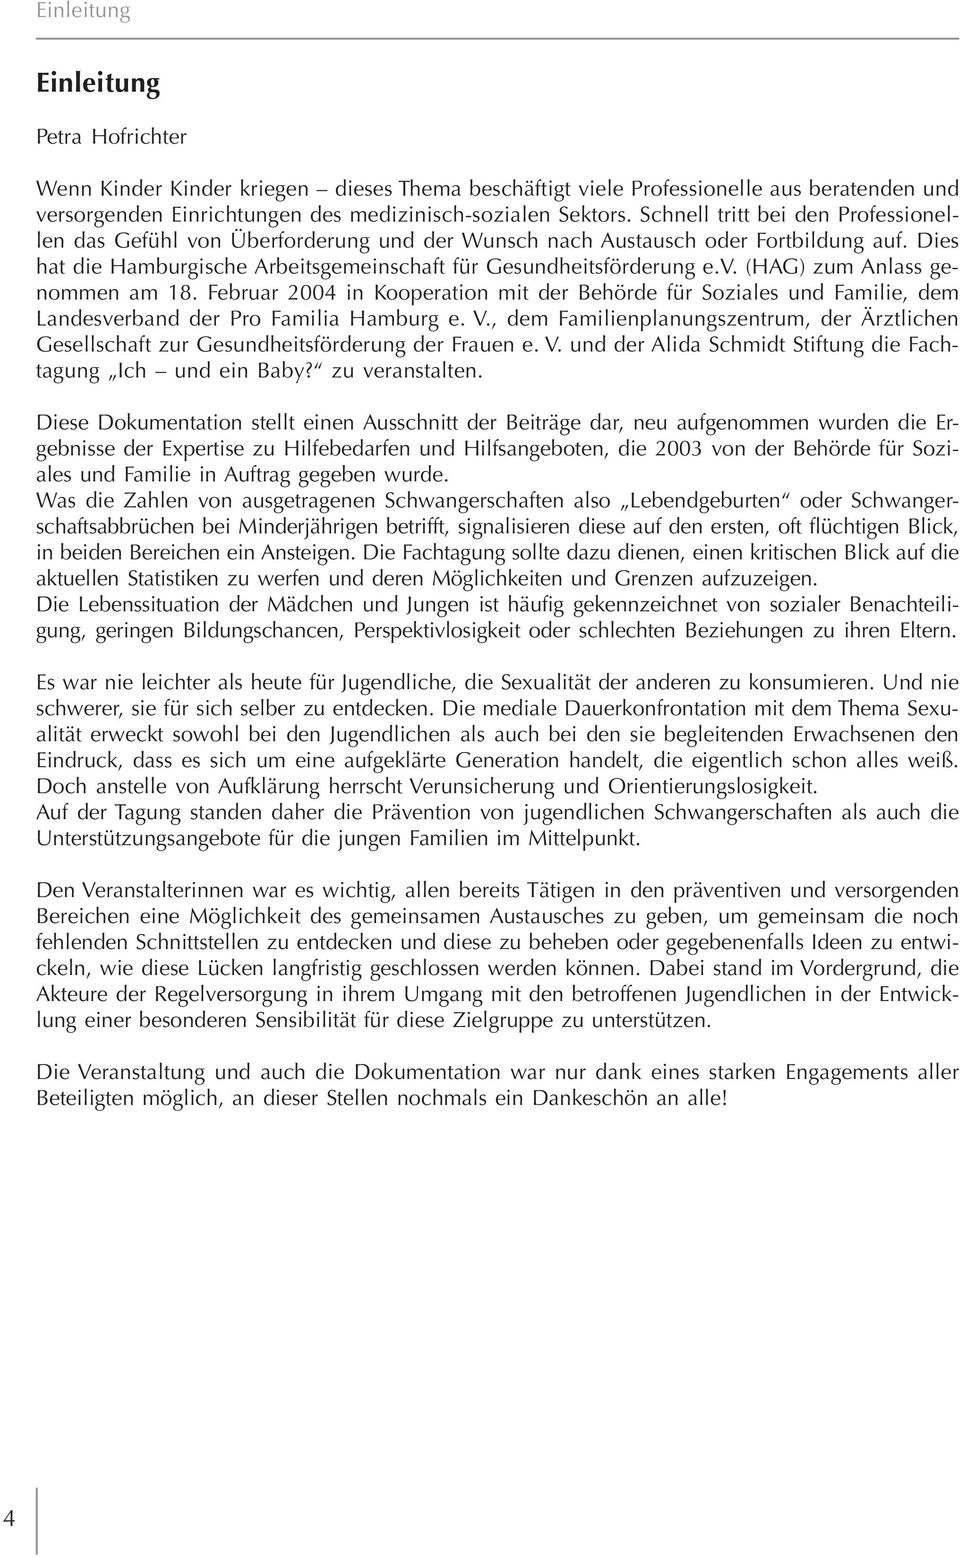 Februar 2004 in Kooperation mit der Behörde für Soziales und Familie, dem Landesverband der Pro Familia Hamburg e. V.